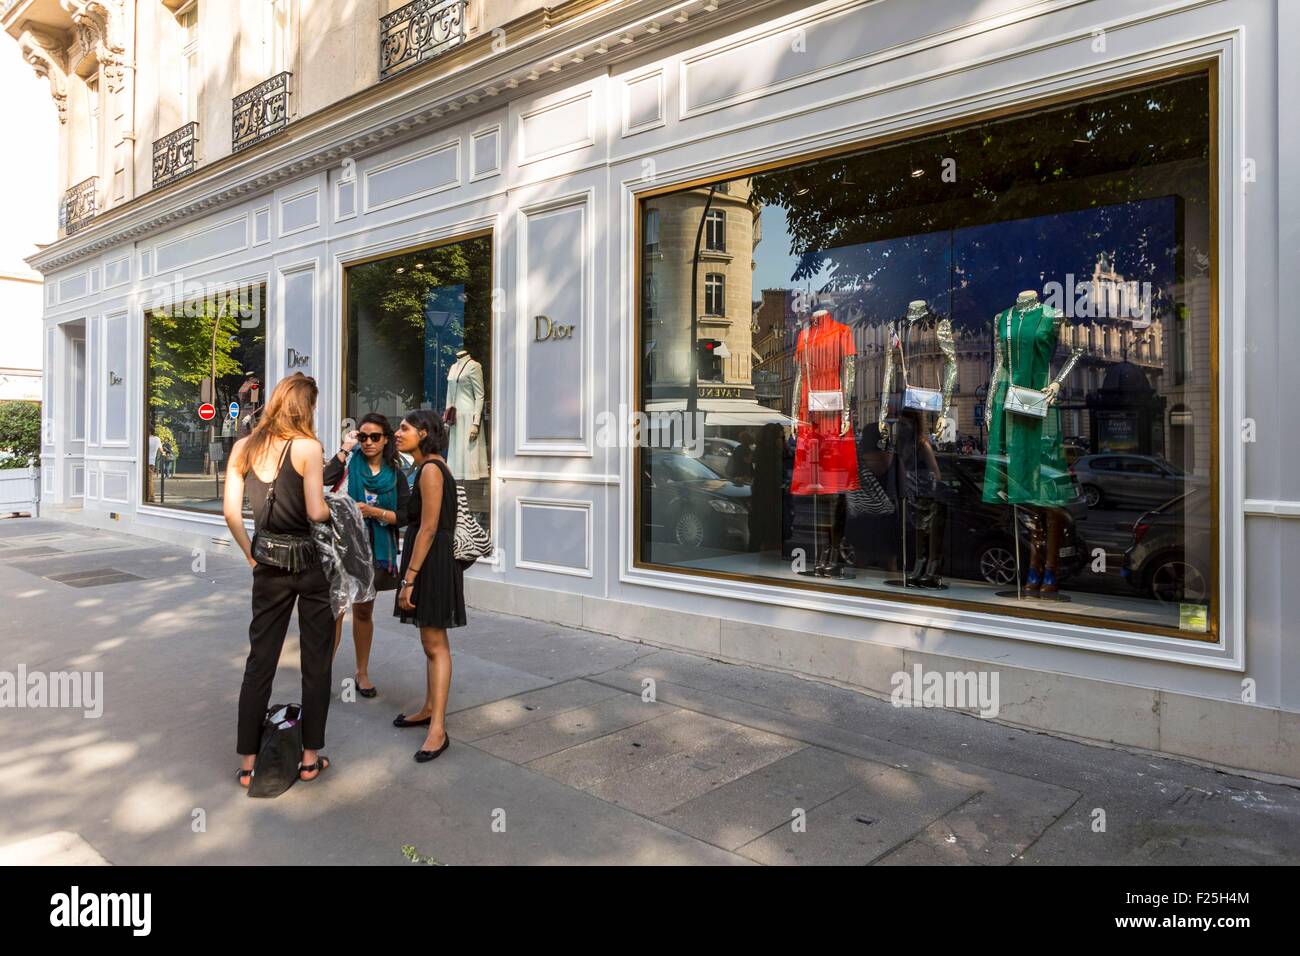 France, Paris, Avenue Montaigne, the Dior boutique Stock Photo - Alamy